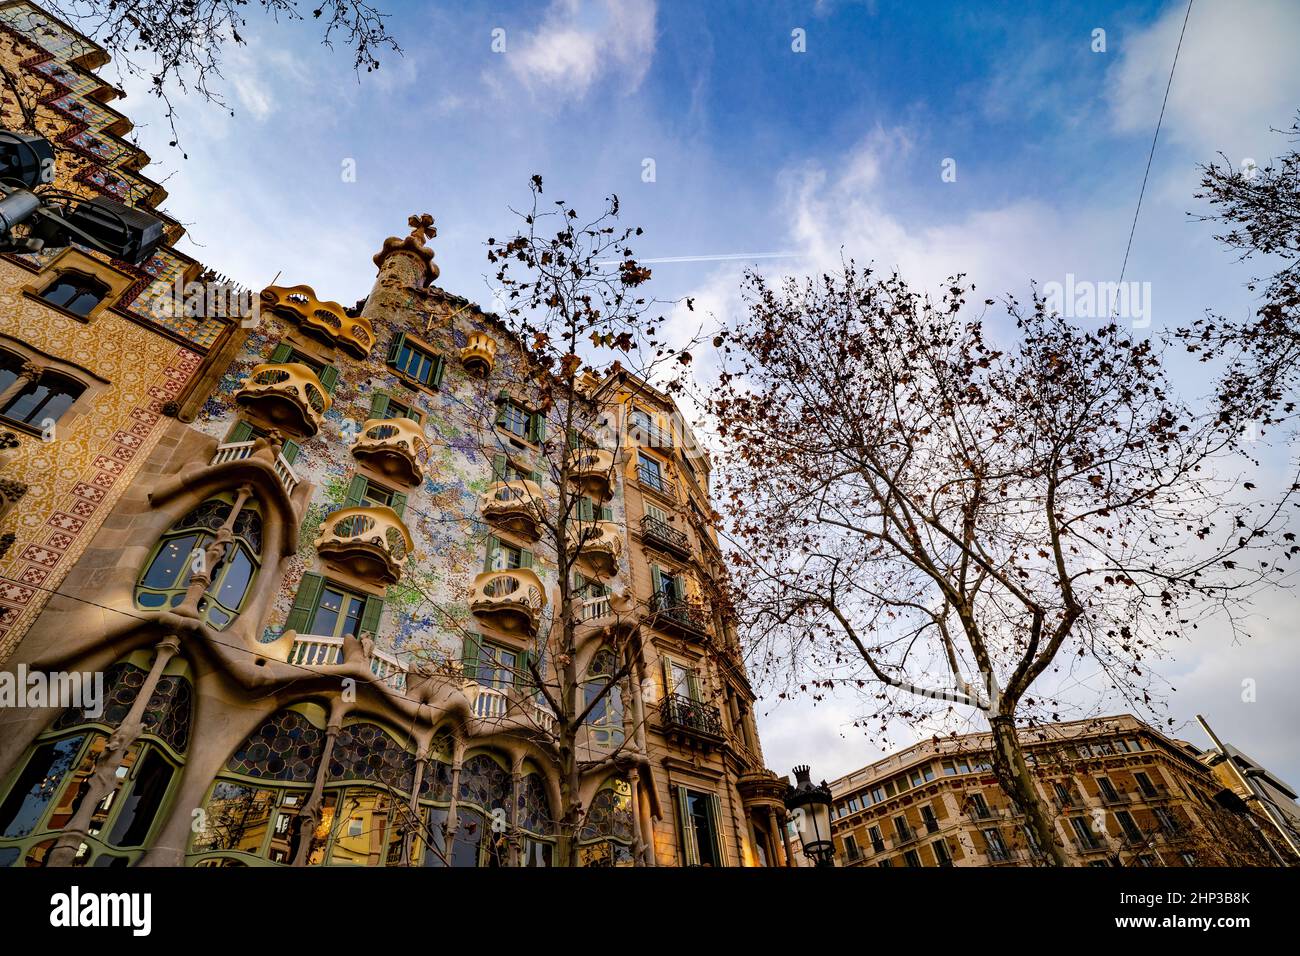 Casa Batllo, une maison sur le Passeig de Gracia de Barcelone, redessinée par l'architecte Antoni Gaudi dans un style moderniste saisissant de 1904 à 1904. Banque D'Images